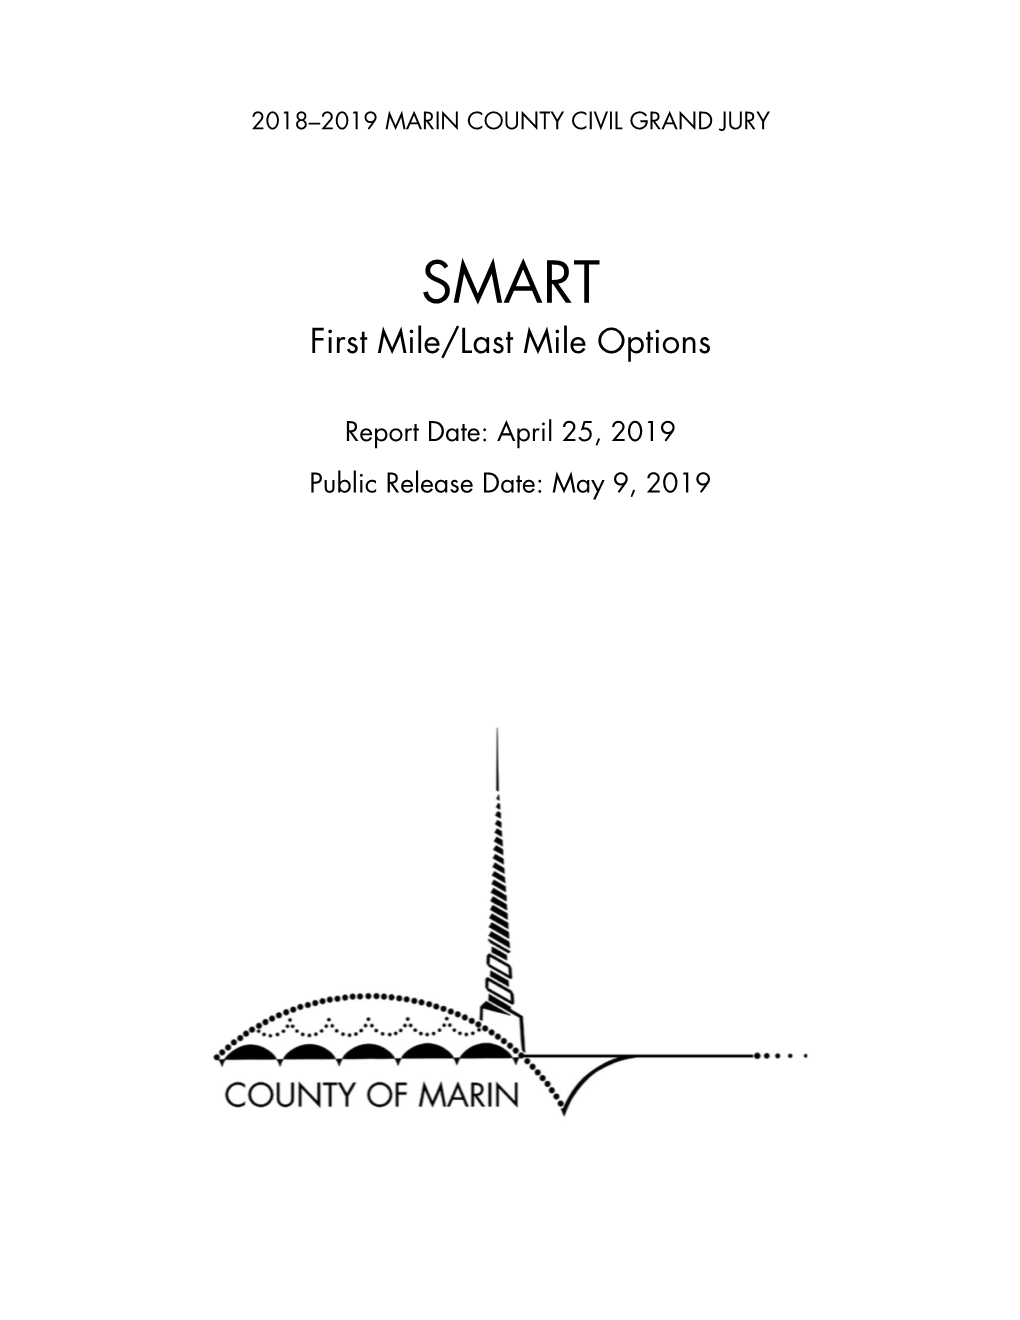 SMART – First Mile/Last Mile Options